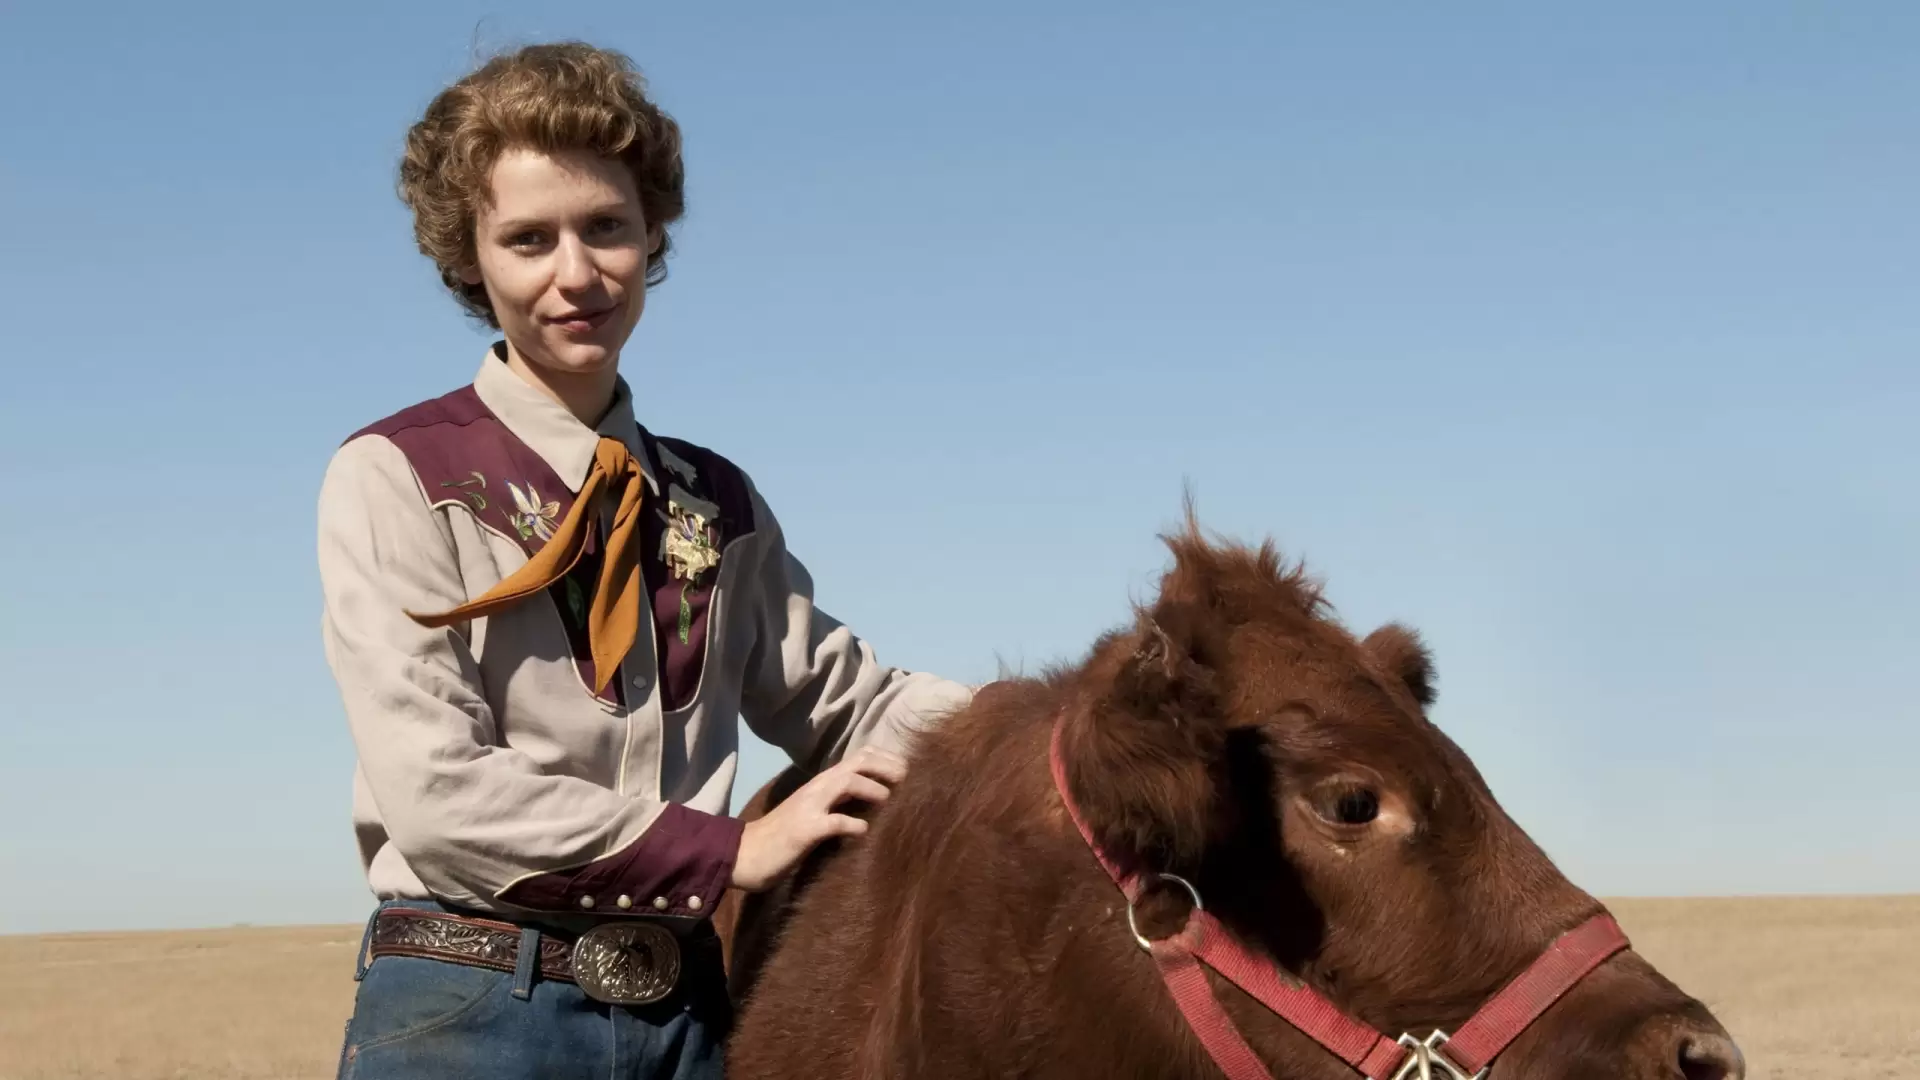 دانلود فیلم Temple Grandin 2010 (تمپل گراندین) با زیرنویس فارسی